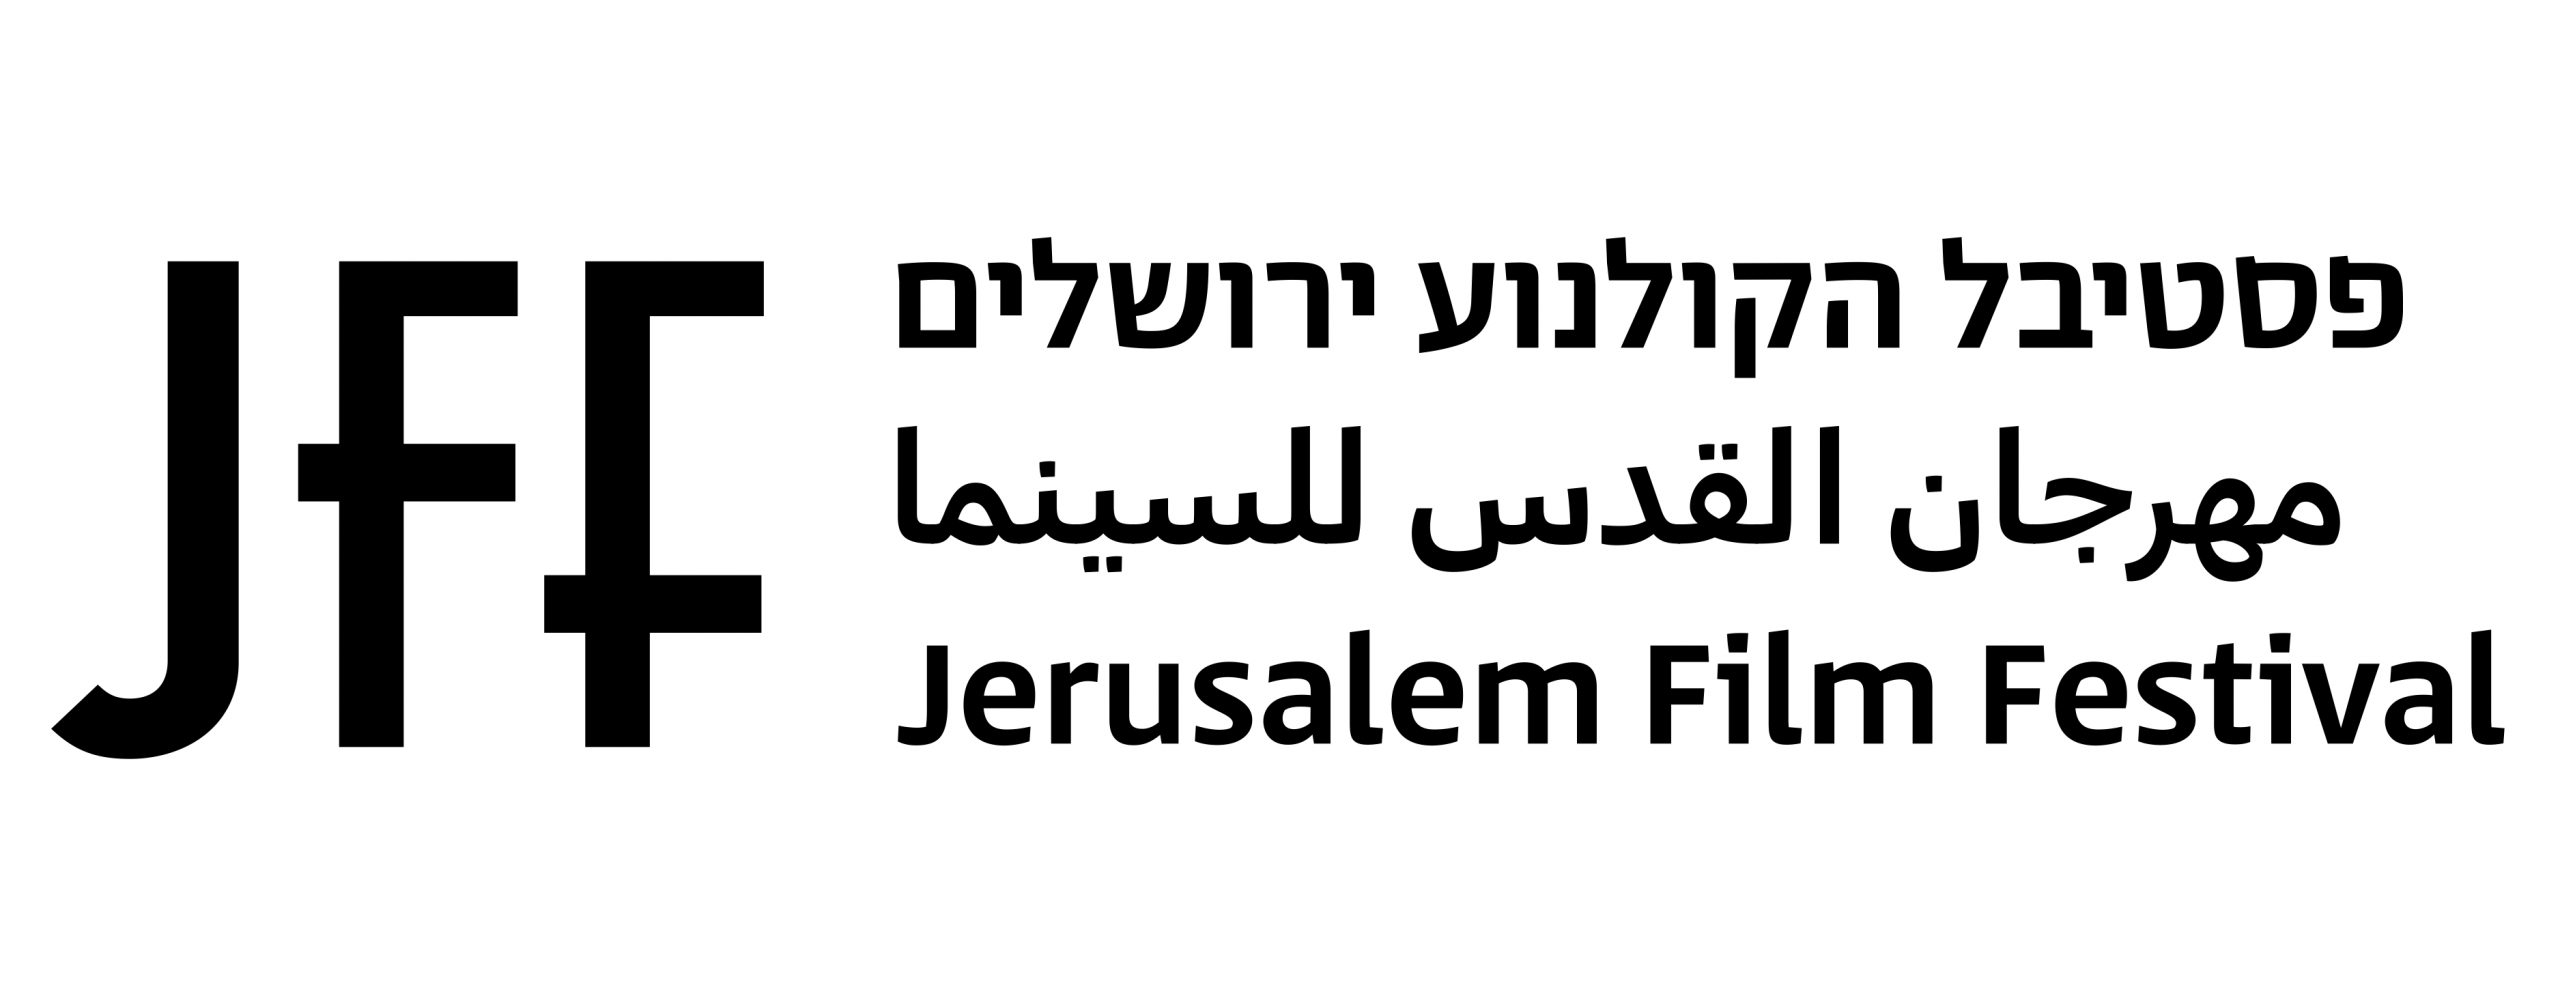 לוגו פסטיבל הקולנוע ירושלים